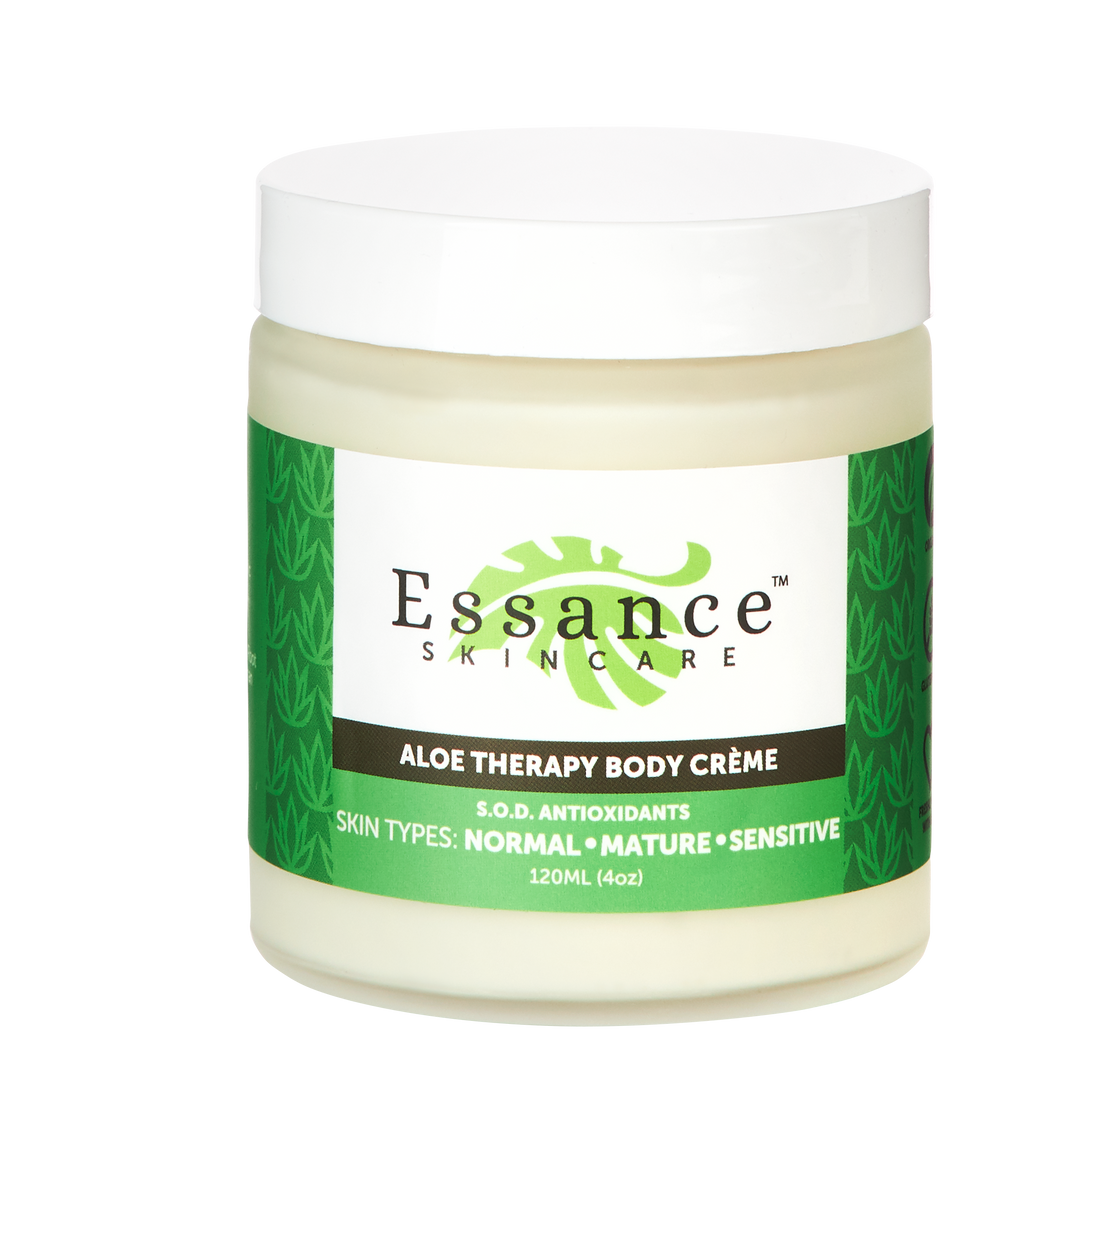 Essance Skincare - Aloe Therapy Body Creme